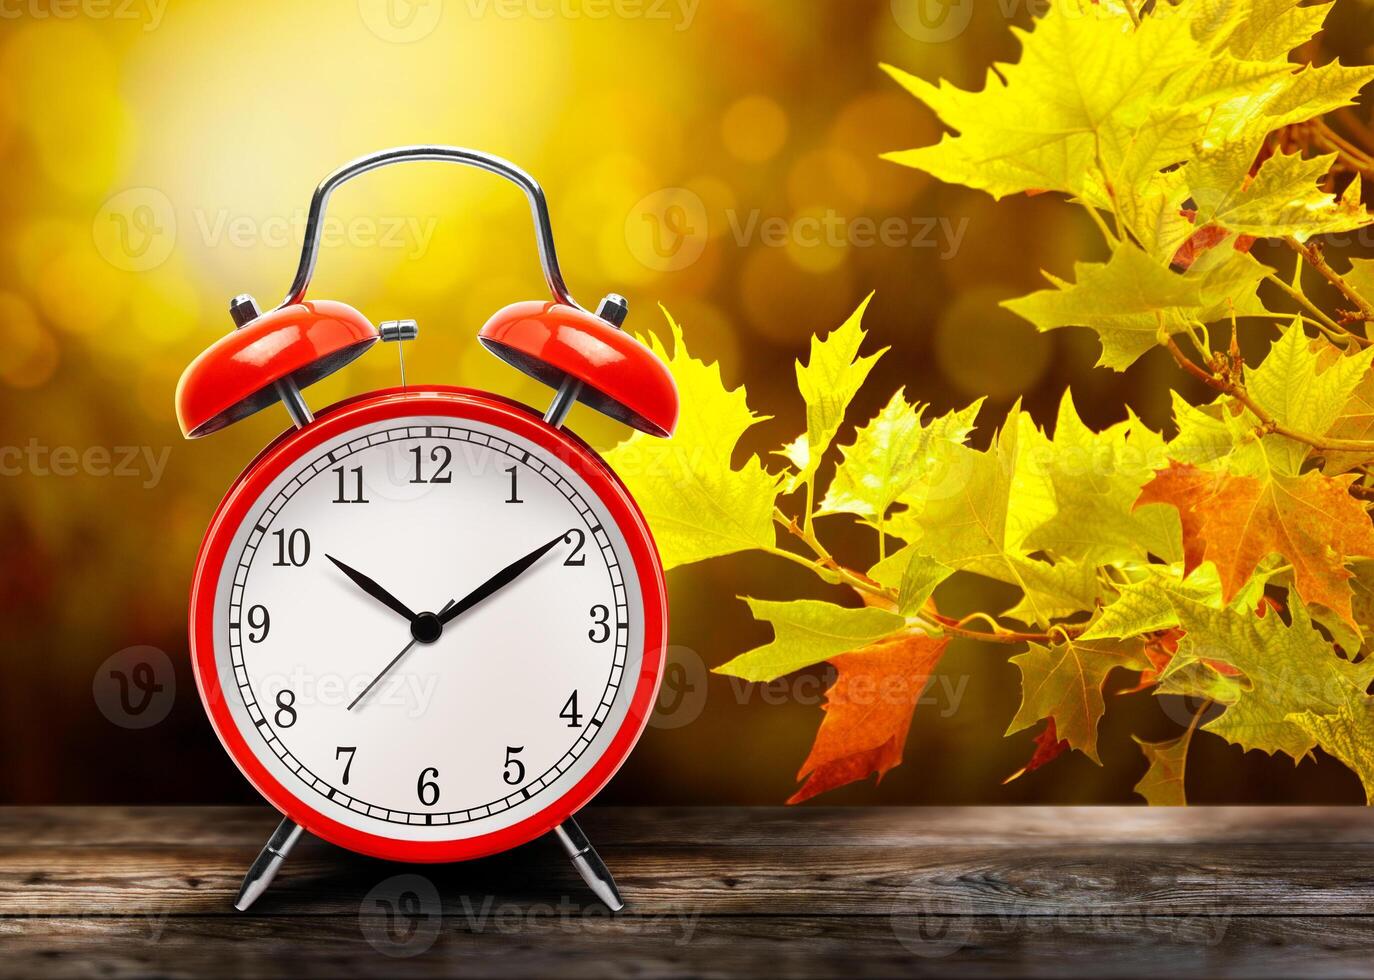 vintage vermelho alarme relógio contra a fundo do amarelo outono bordo folhas foto